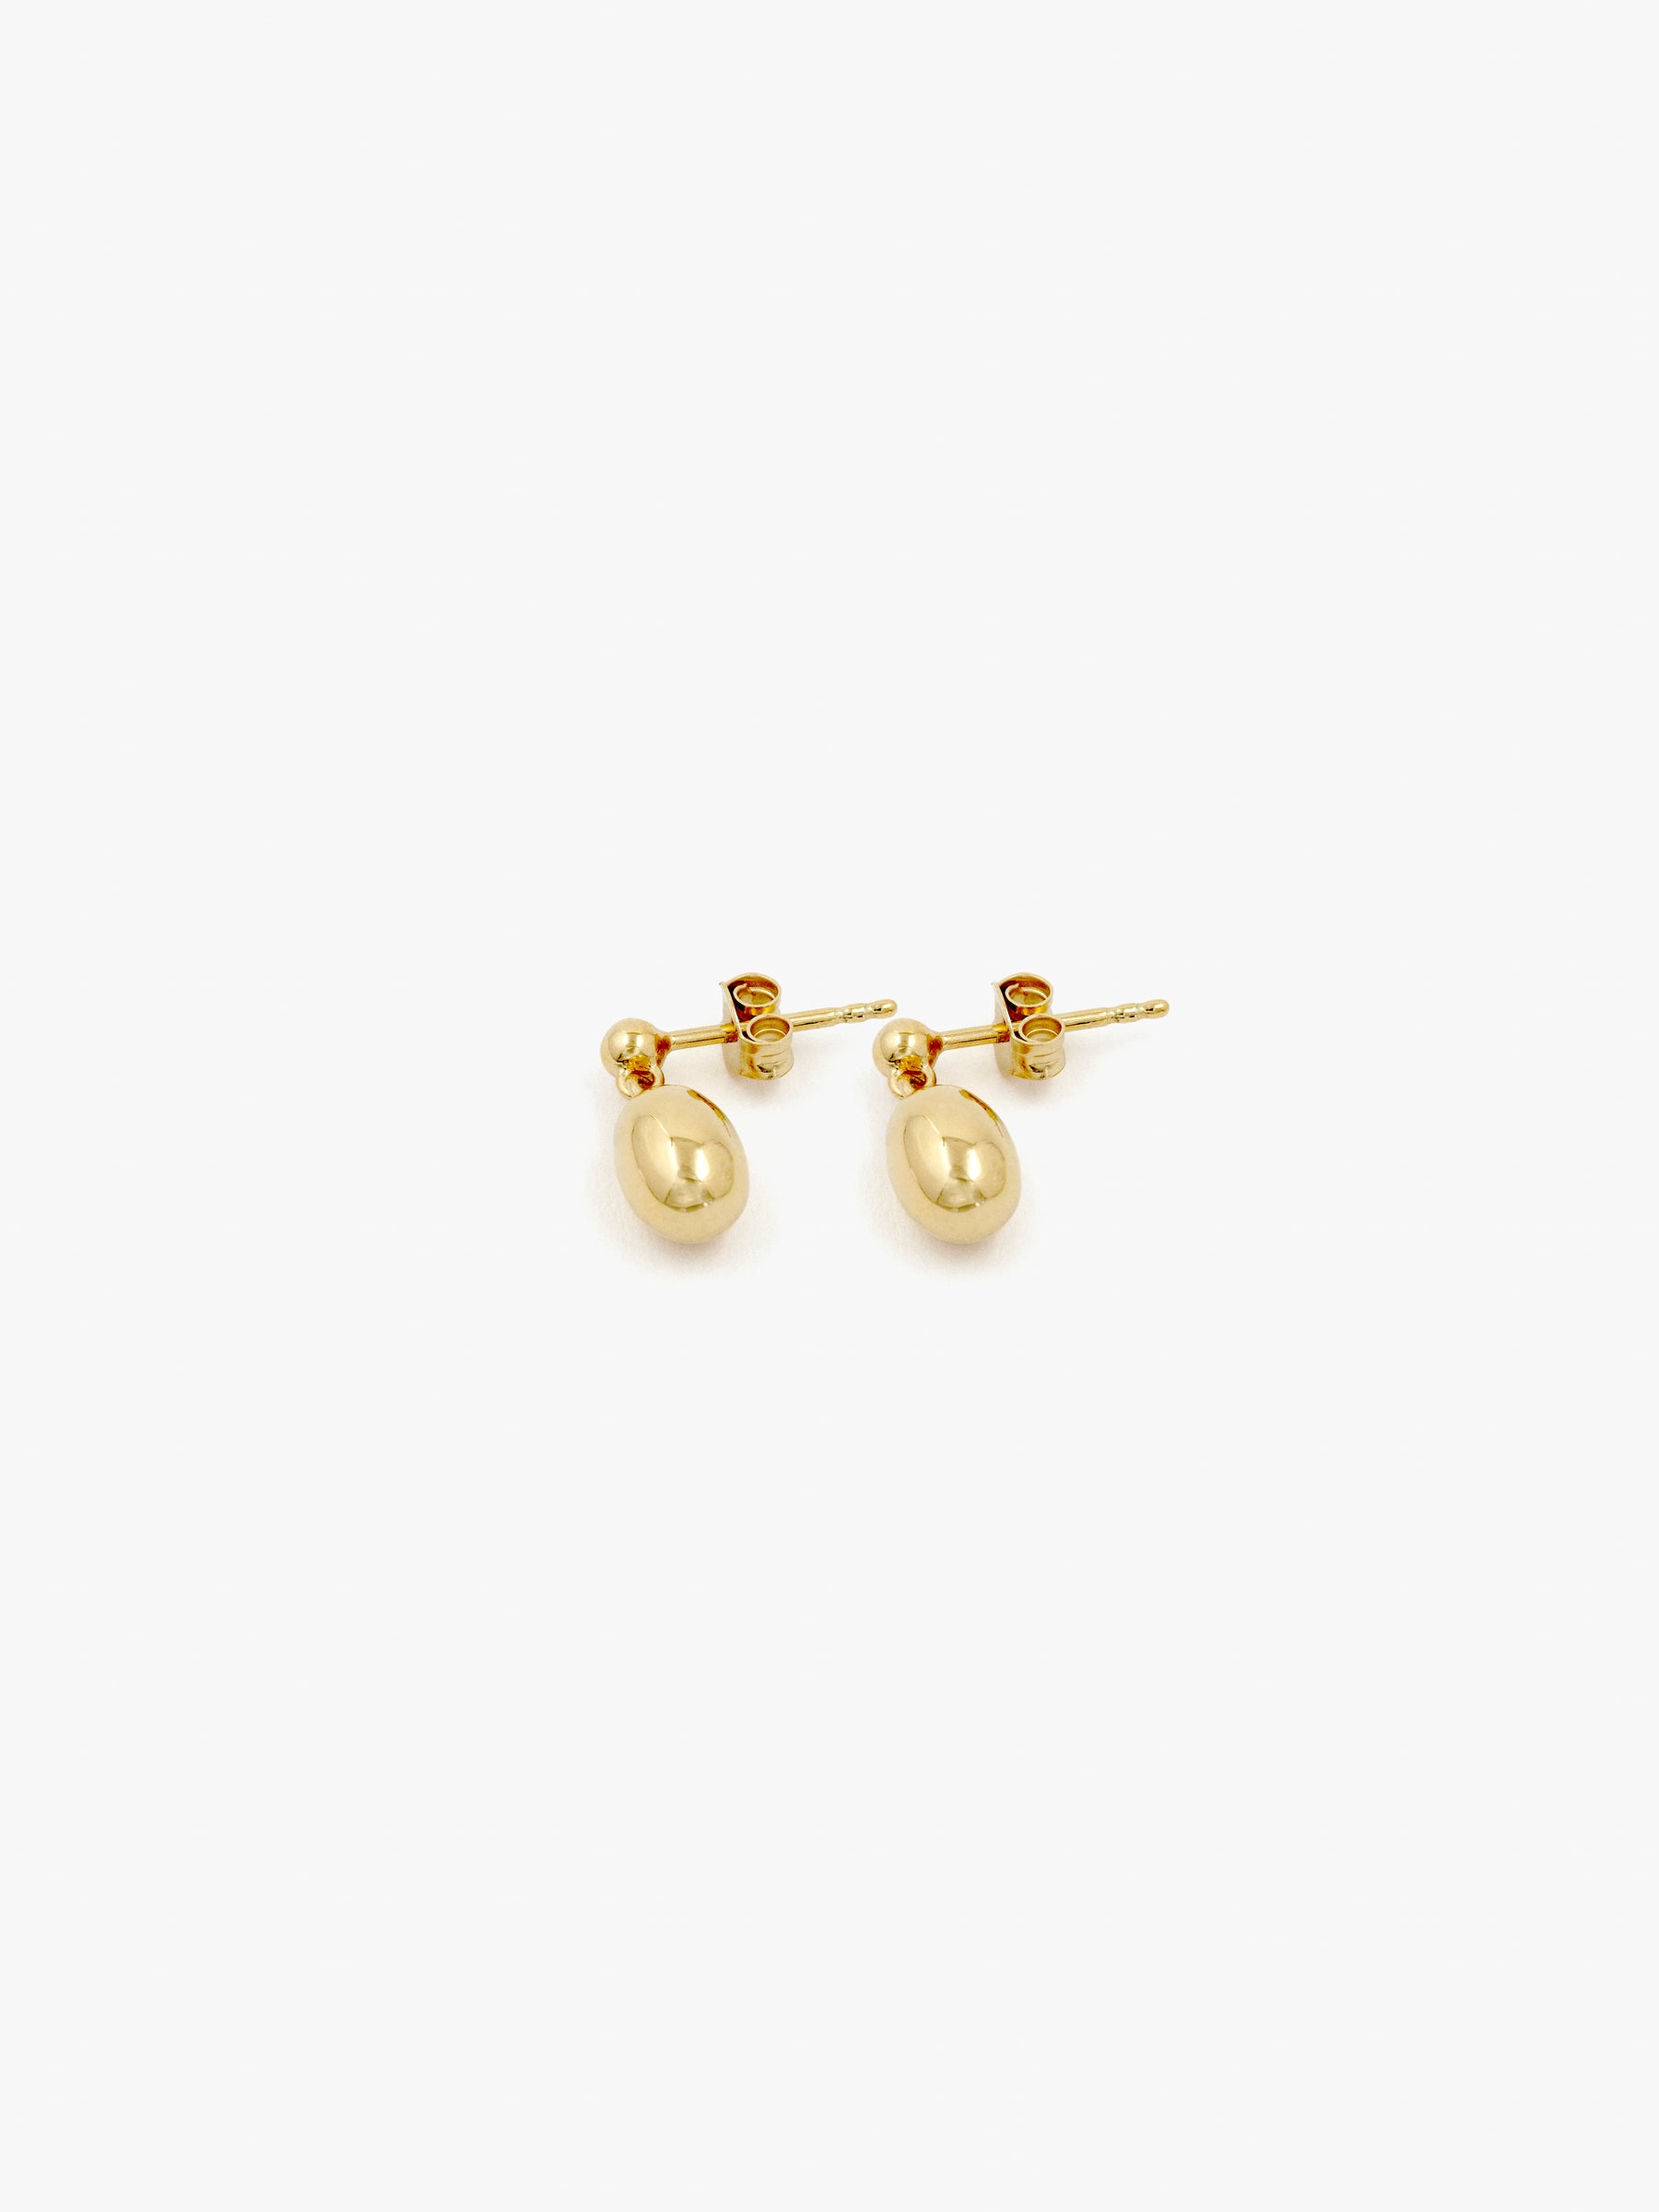 Reflection Mini Earrings - GOLD / RAGBAG (リフレクションミニイヤリング - ゴールド / ラグバッグ) - ICHI GALLERY | ジュエリー ブランド デンマーク 女性  小物 アクセサリー ギフト 贈り物 プレゼント